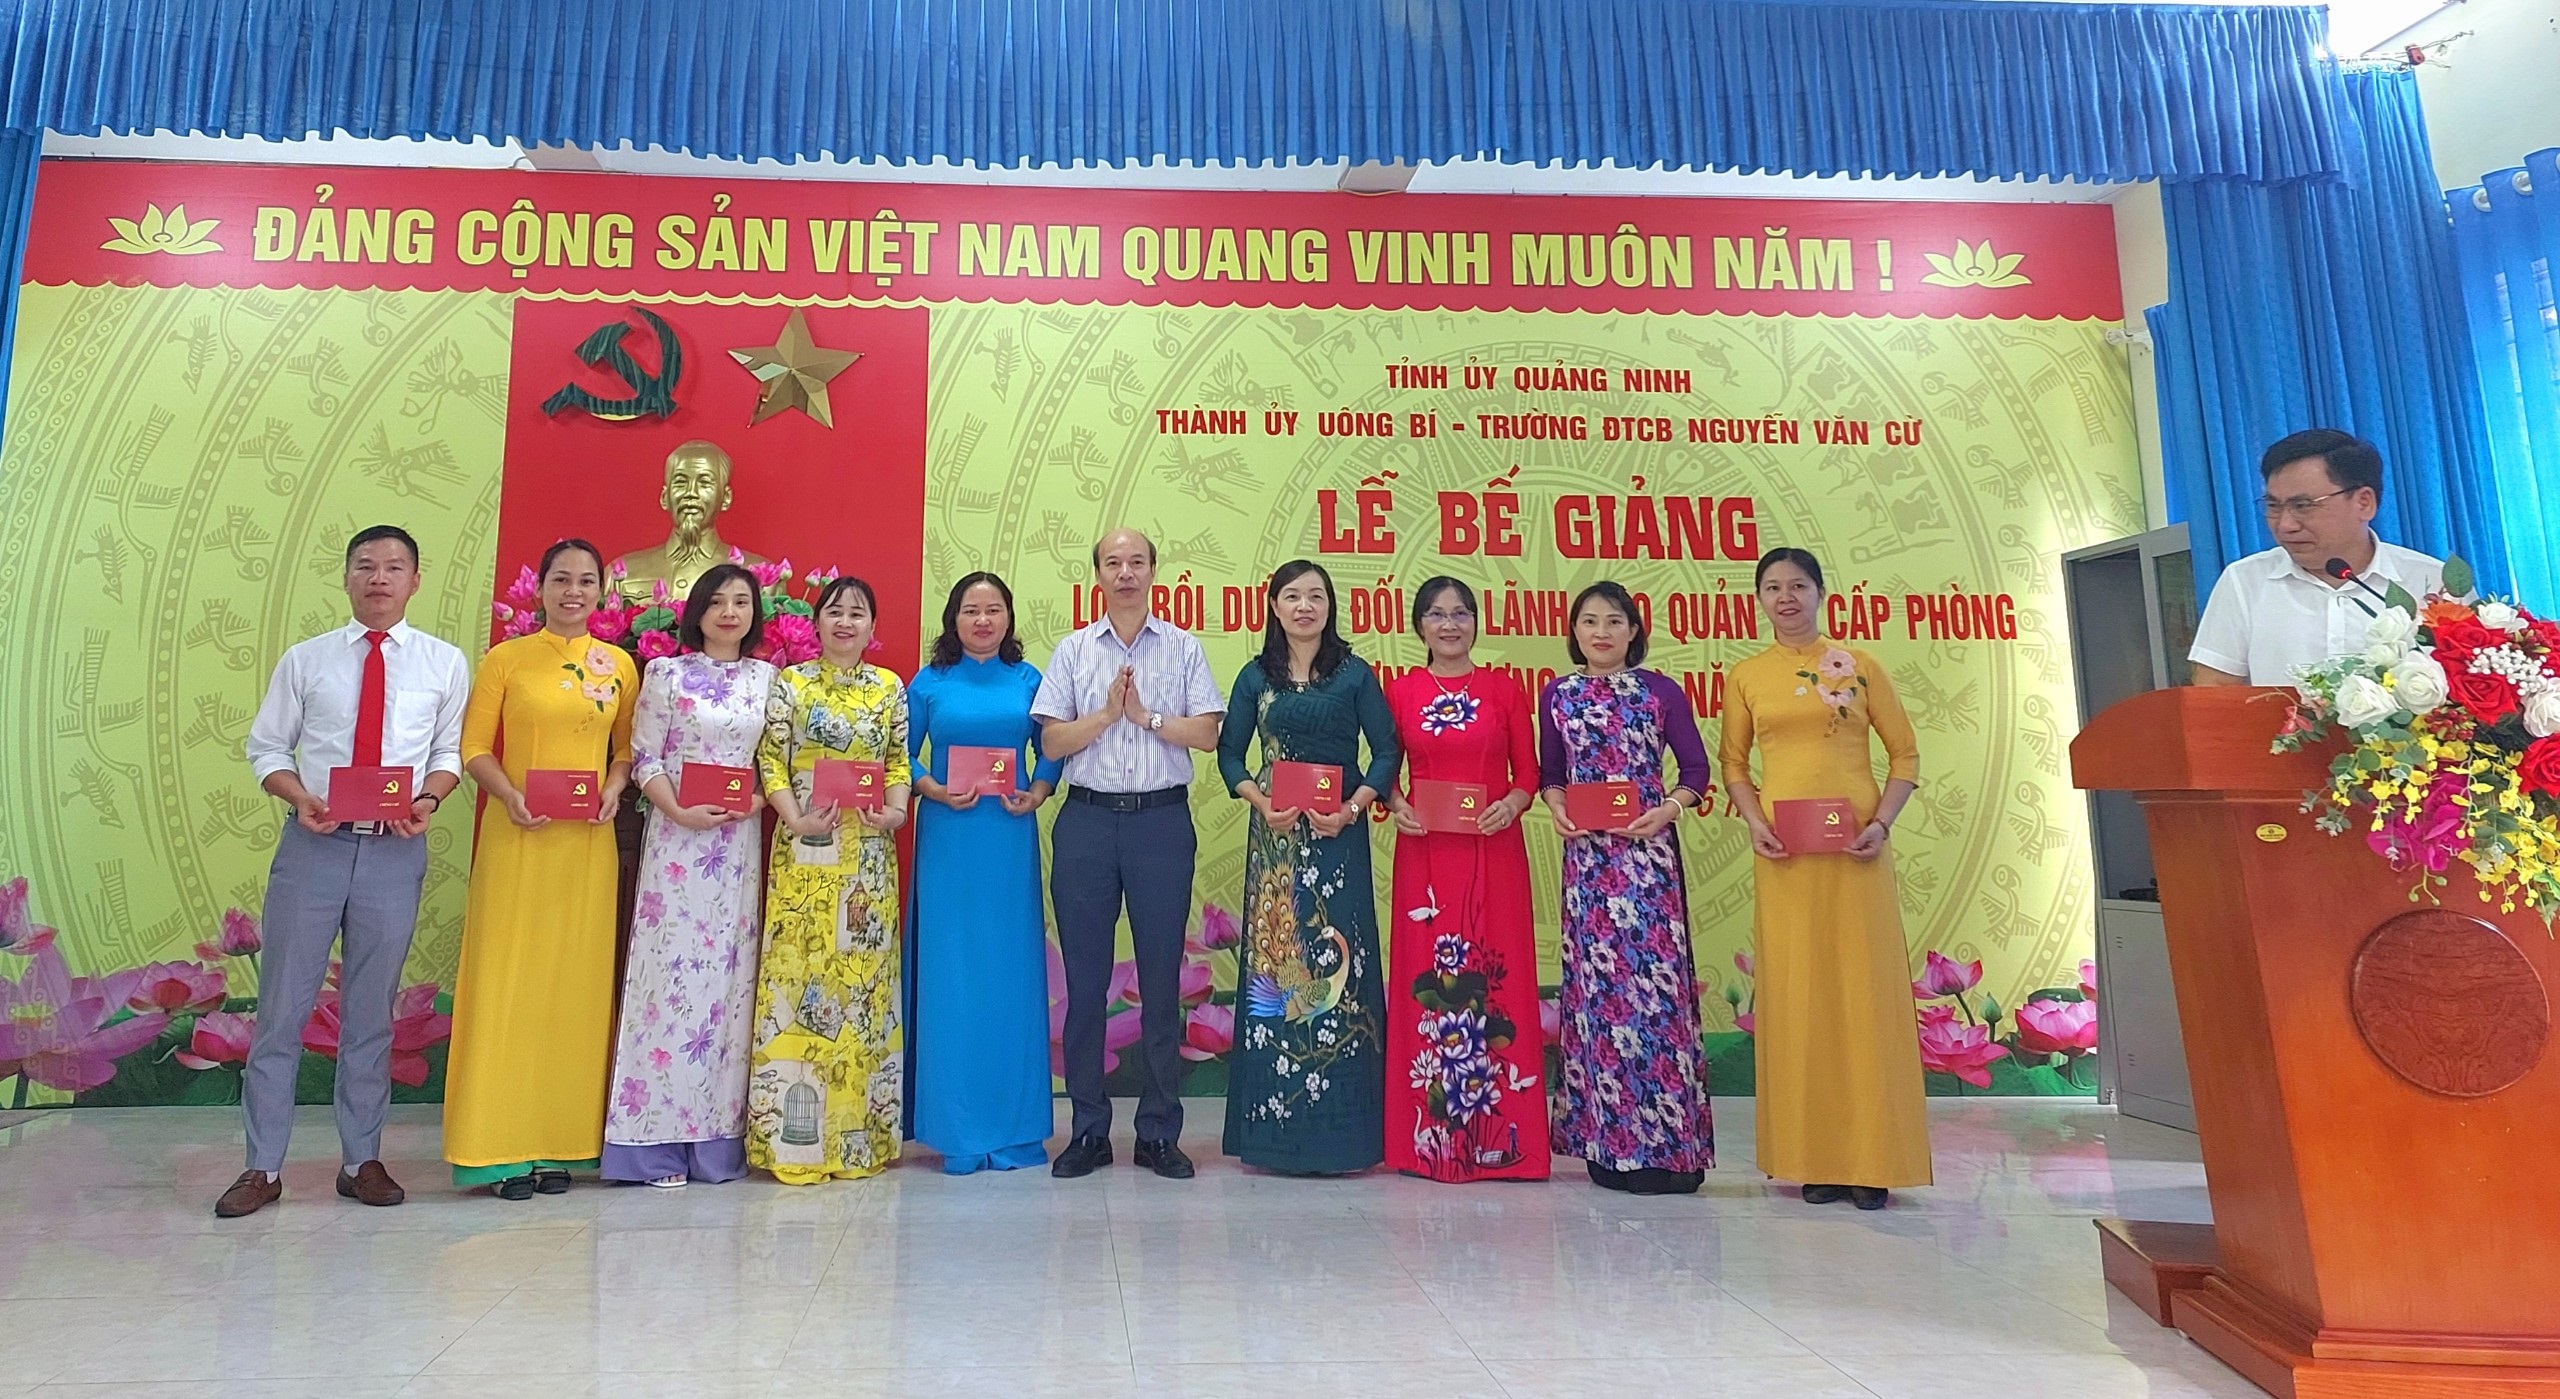 Bế giảng lớp bồi dưỡng lãnh đạo quản lý cấp phòng và tương đương K52 tại thành phố Uông Bí